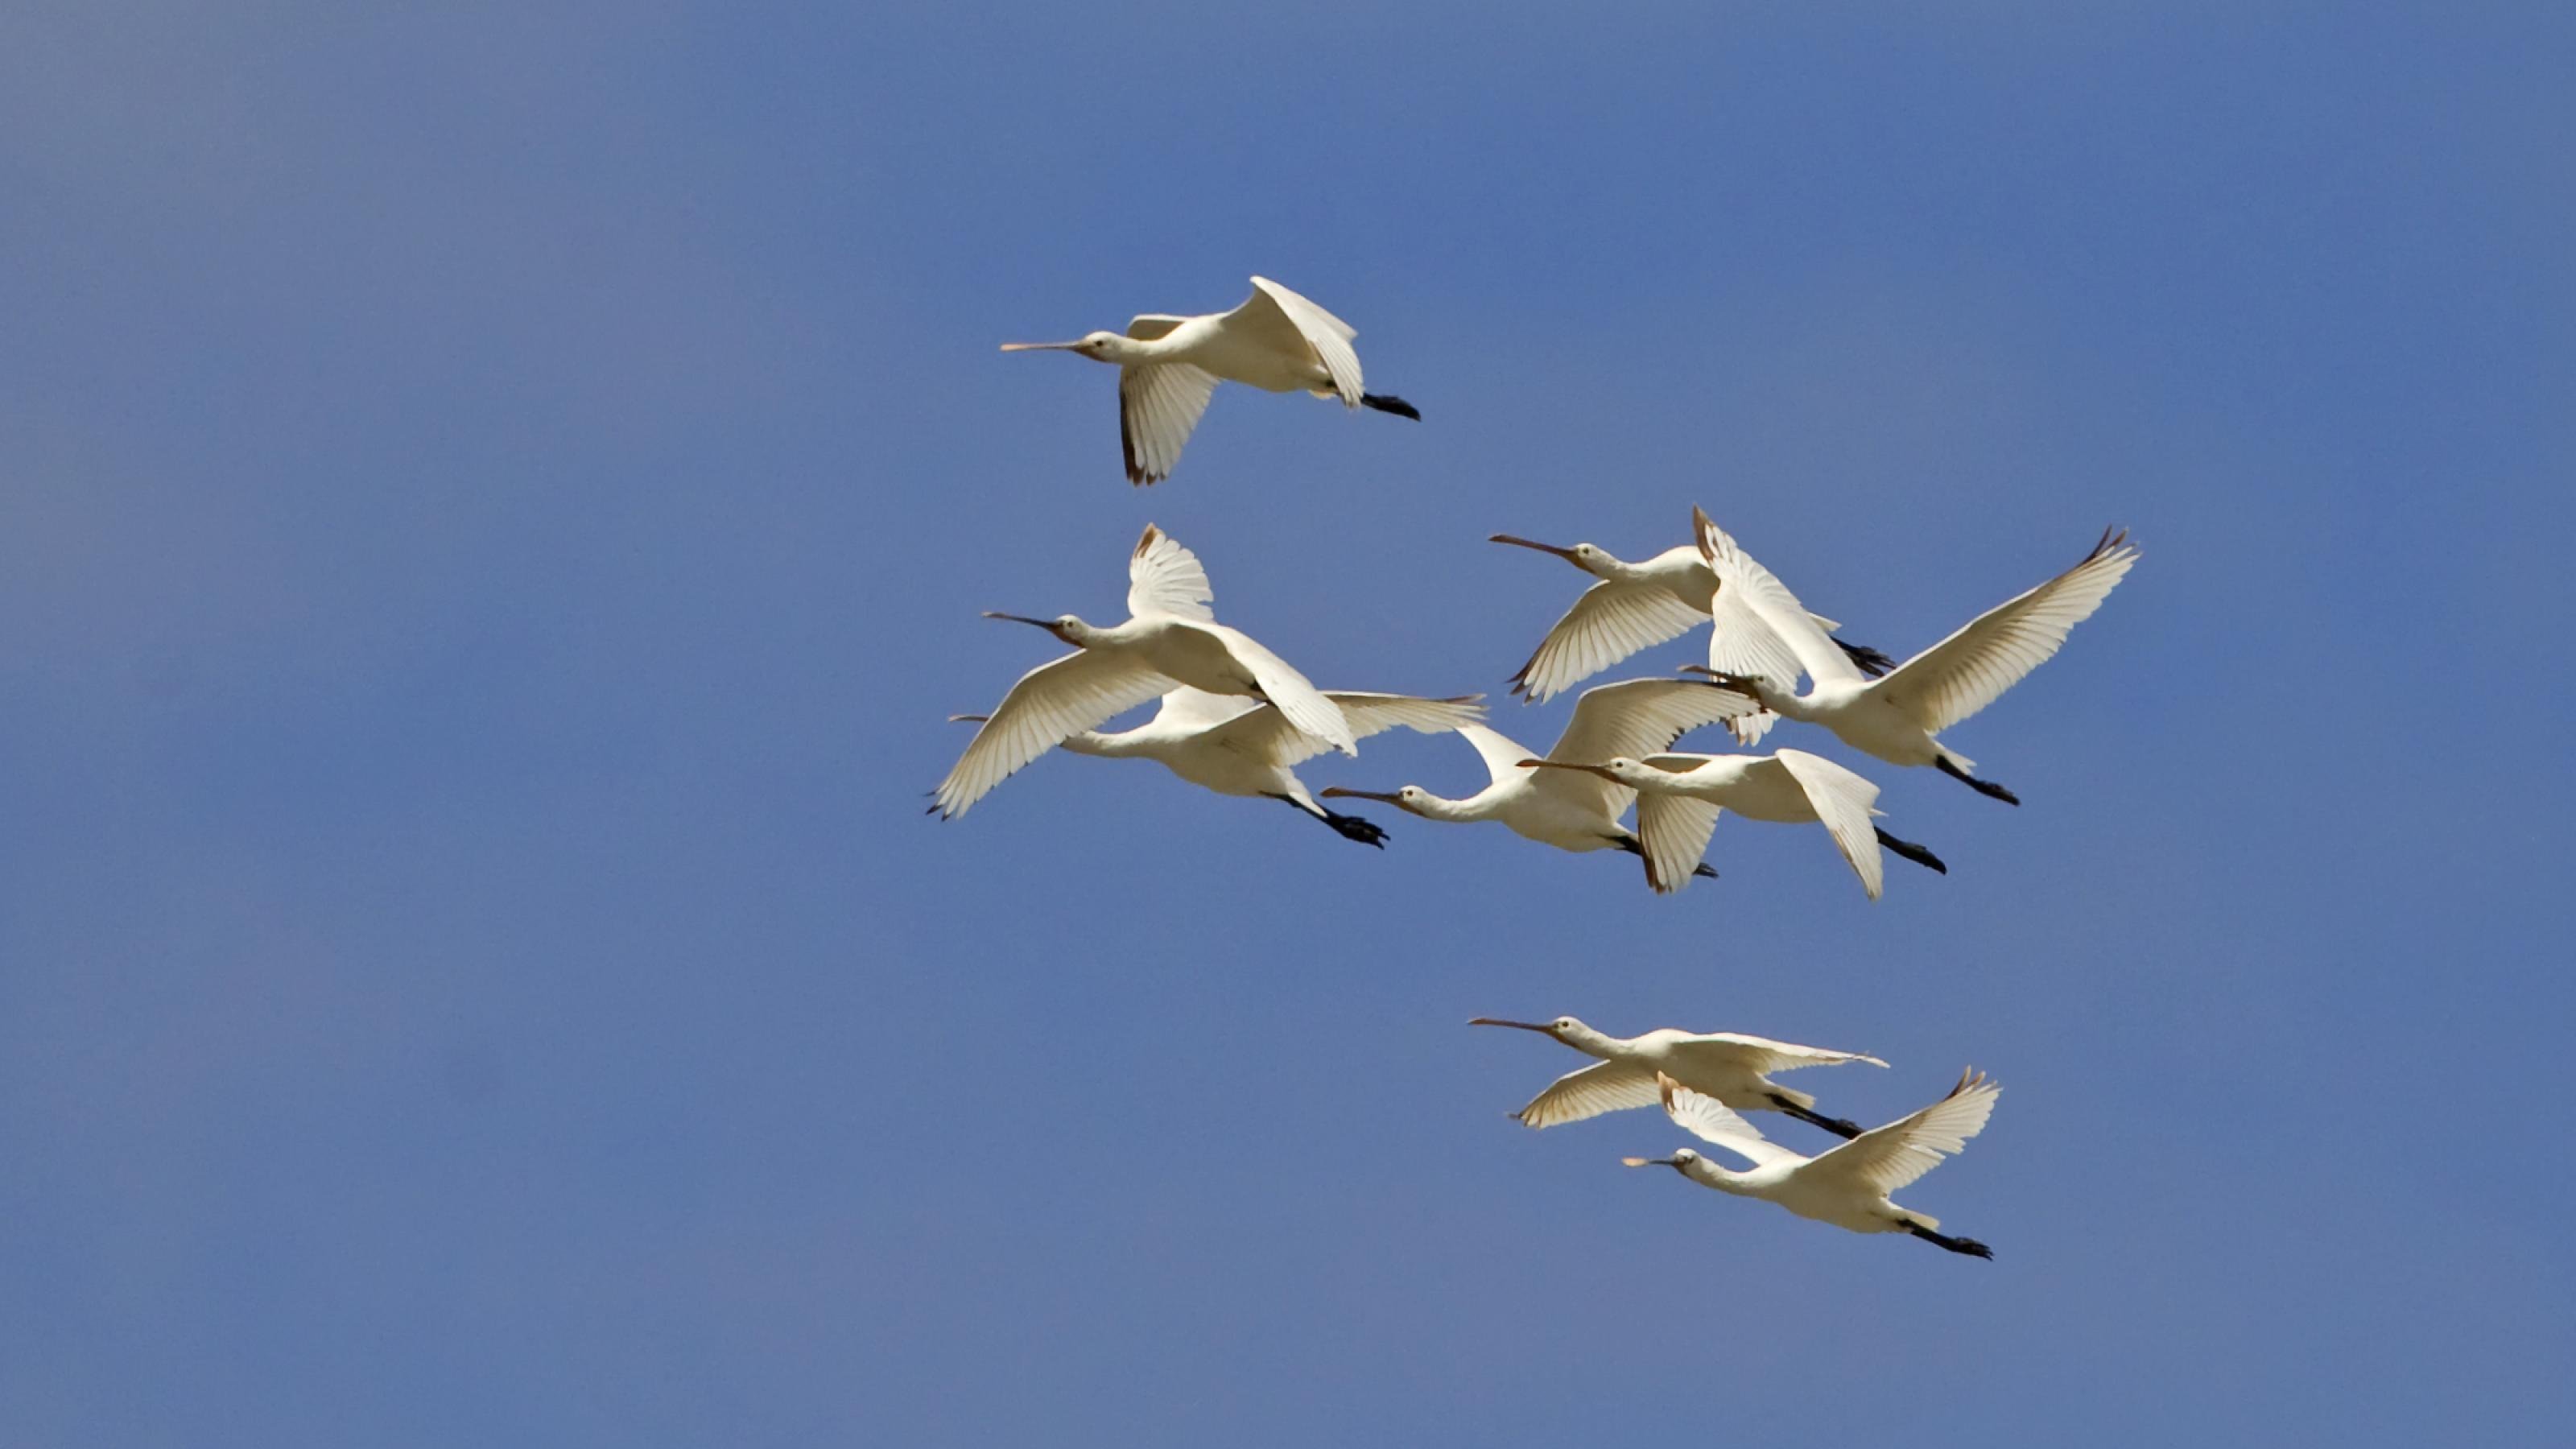 Das Bild zeigt eine Gruppe von Löfflern im Überflug. Die großen weißen Vögel haben lange Schnäbel mit einer breiten Spitze.